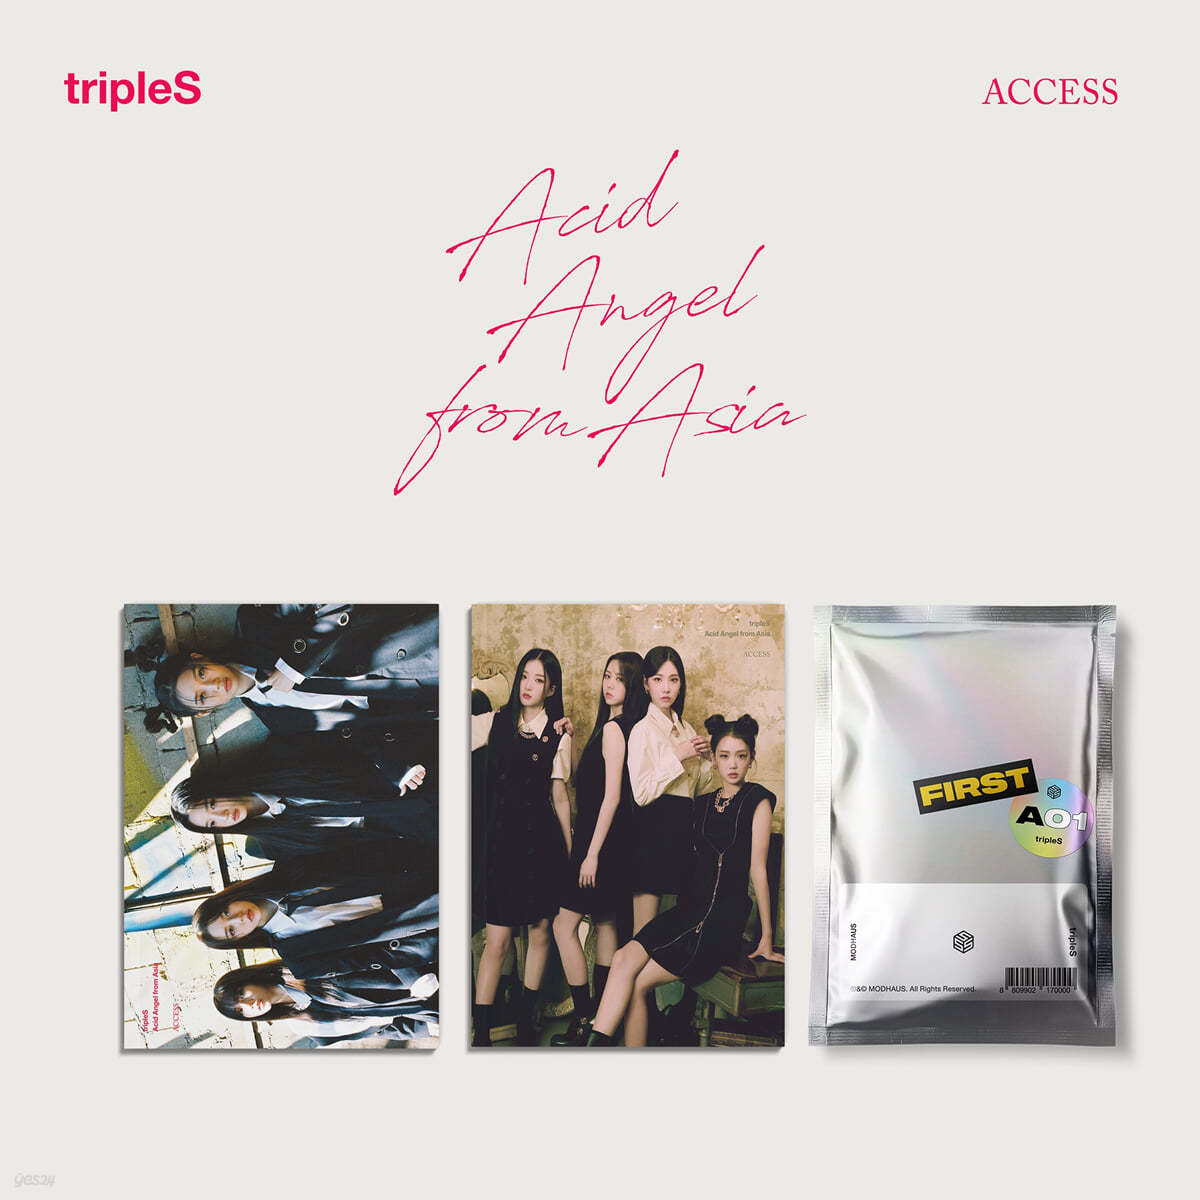 tripleS (트리플에스) - Acid Angel from Asia <ACCESS> [A + B + 1st ATOM01 OBJEKT SET]